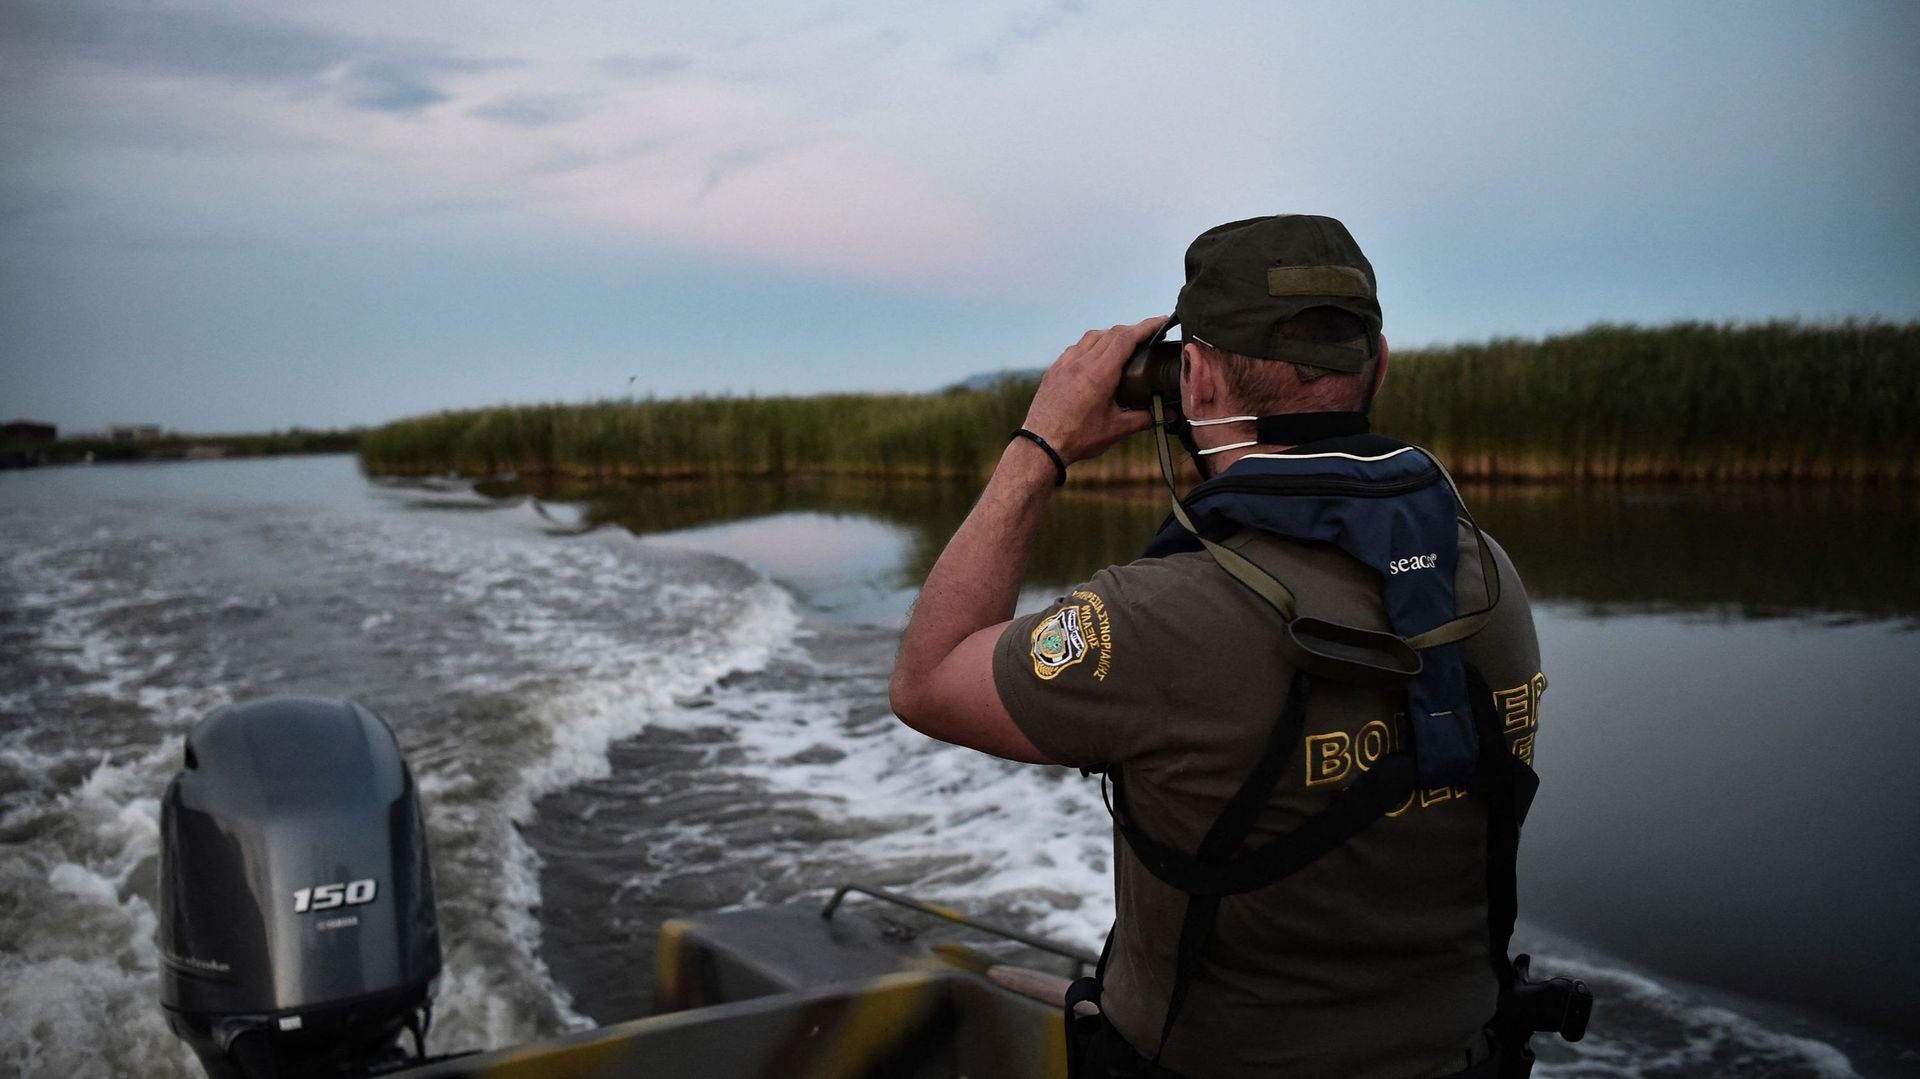 Un officier de police patrouille dans le delta du fleuve Evros sur un bateau, près d'Alexandroupoli, le long de la frontière gréco-turque, le 8 juin 2021.